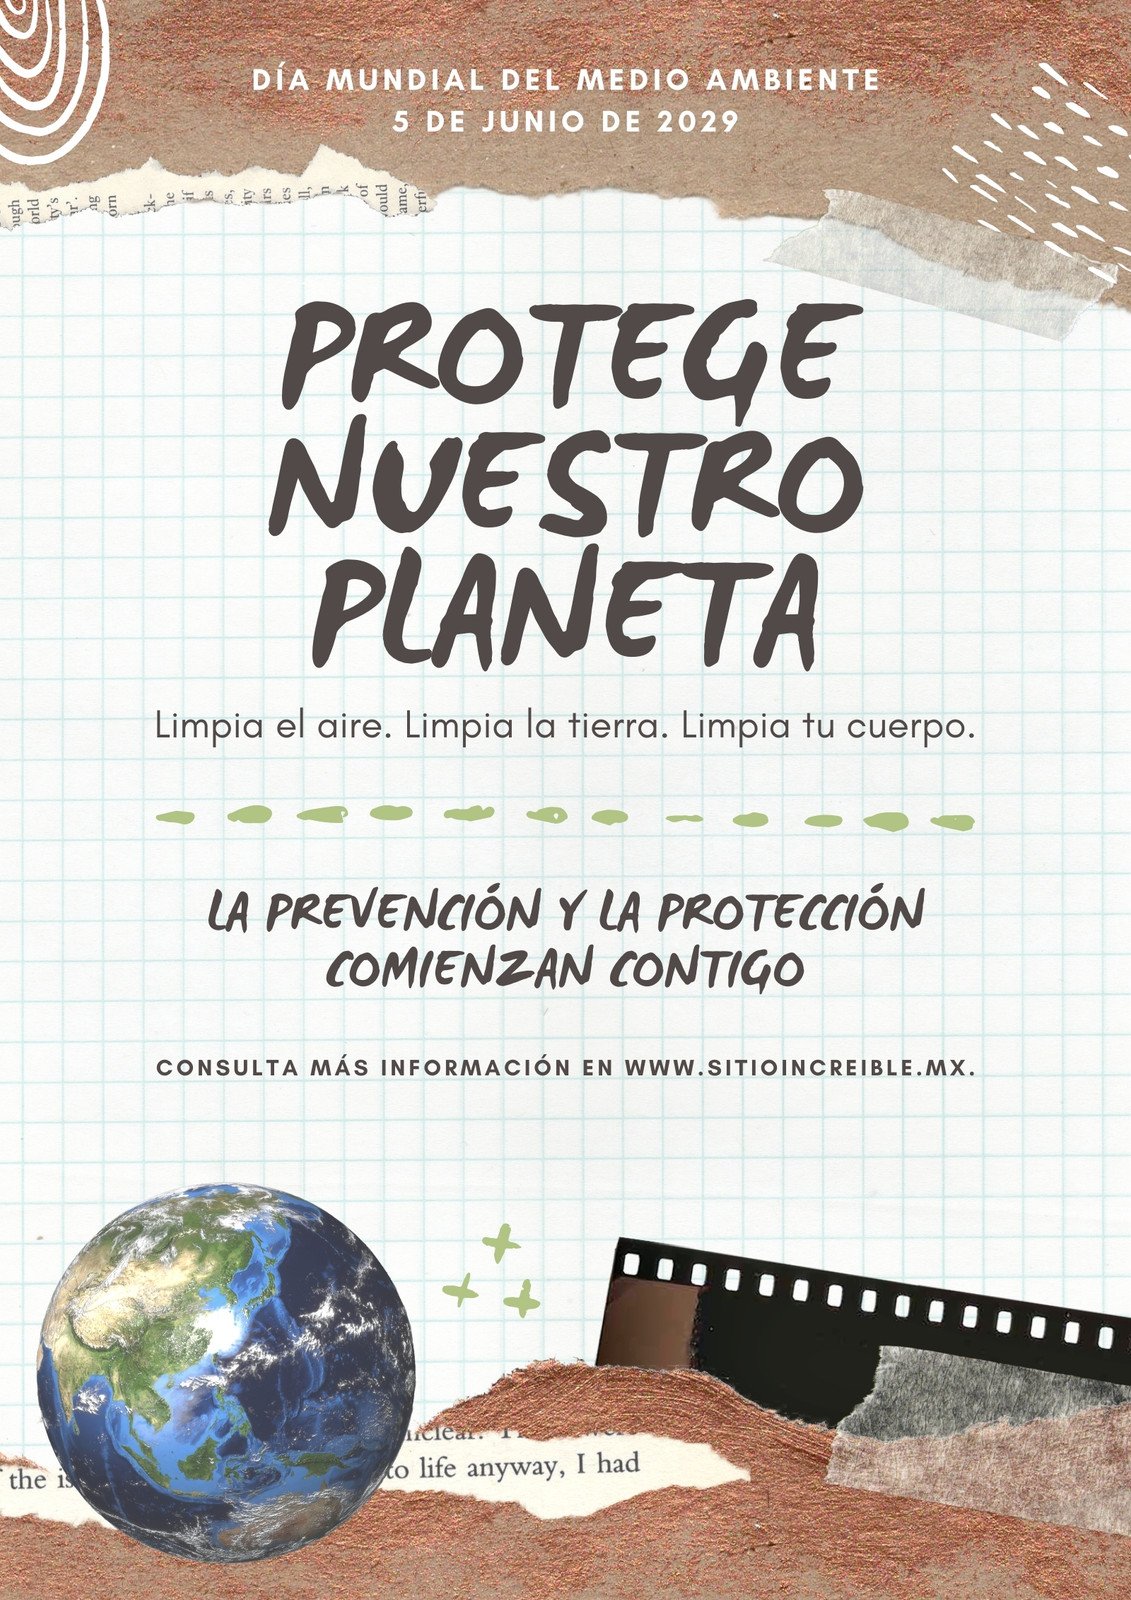 Hermana bahía Brote Plantillas para carteles del medio ambiente gratis | Canva